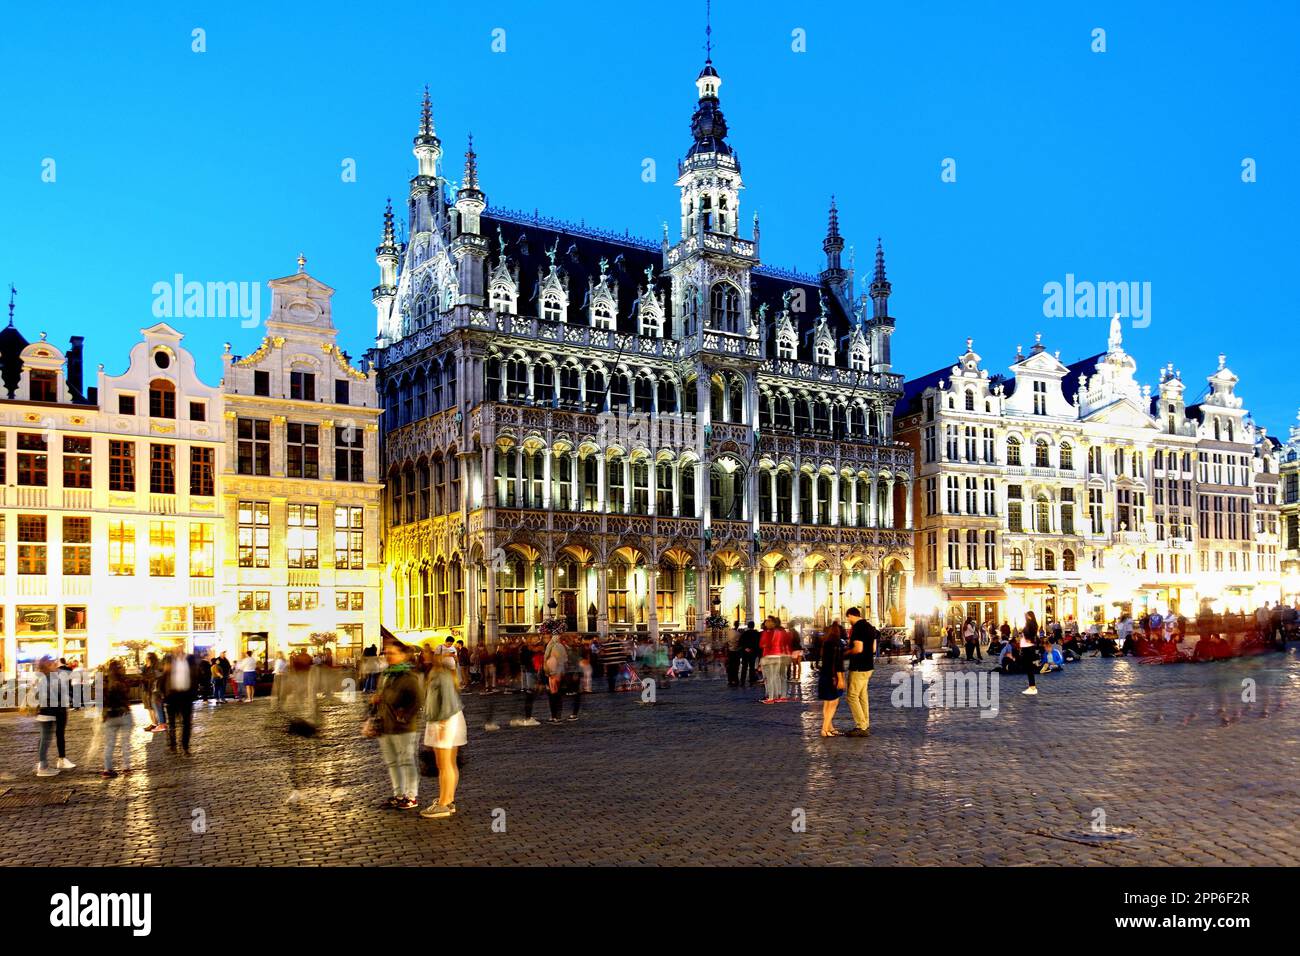 BRUSELAS, BÉLGICA - 4 DE AGOSTO de 2016: La plaza de la ciudad medieval Grand Place o Grote Markt de Bruselas, Patrimonio de la Humanidad de la UNESCO Foto de stock